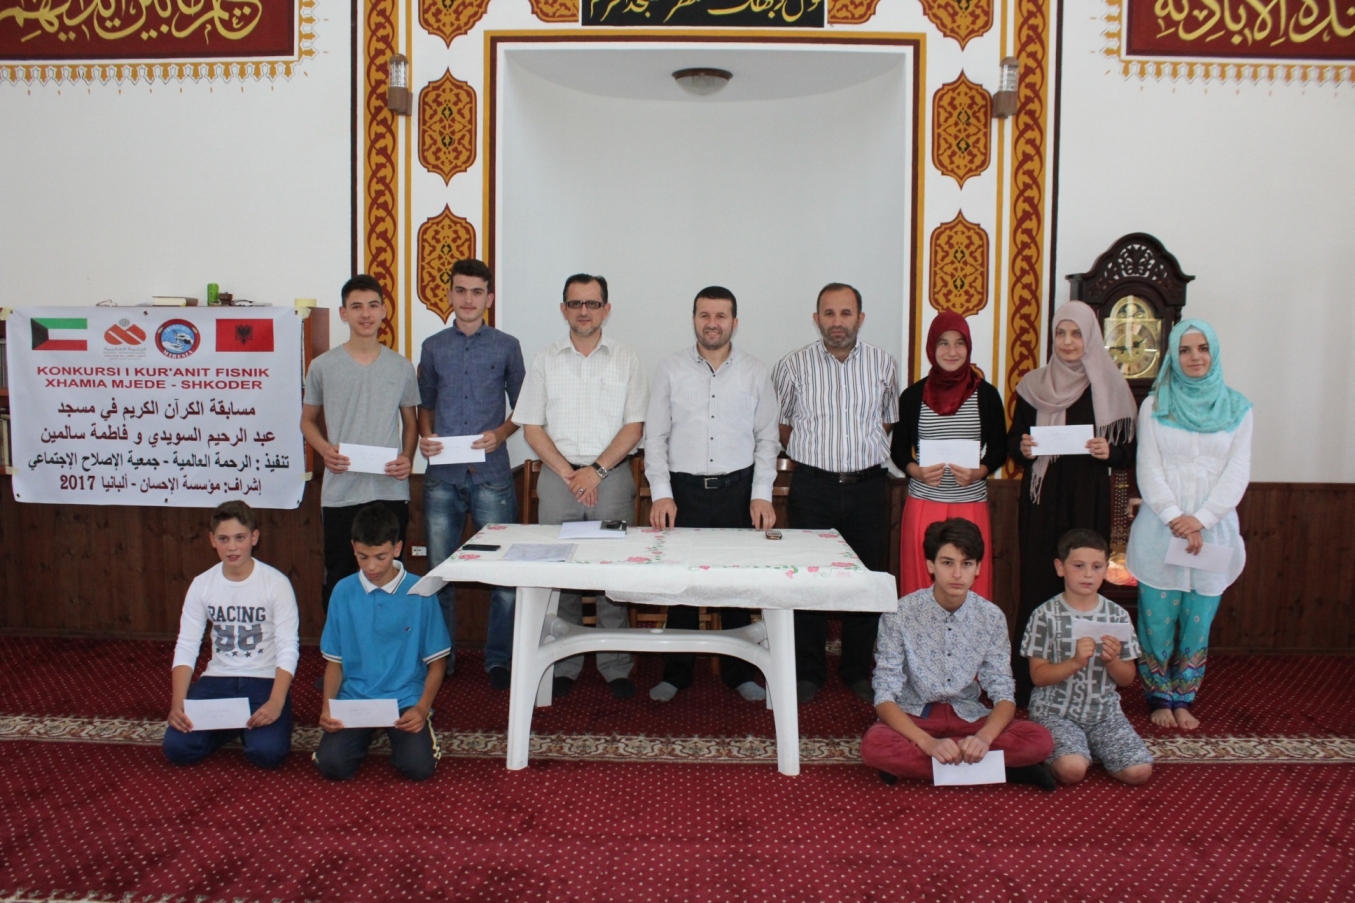 Konkurs për Kur’anin Famëlartë në muajin e Ramazanit